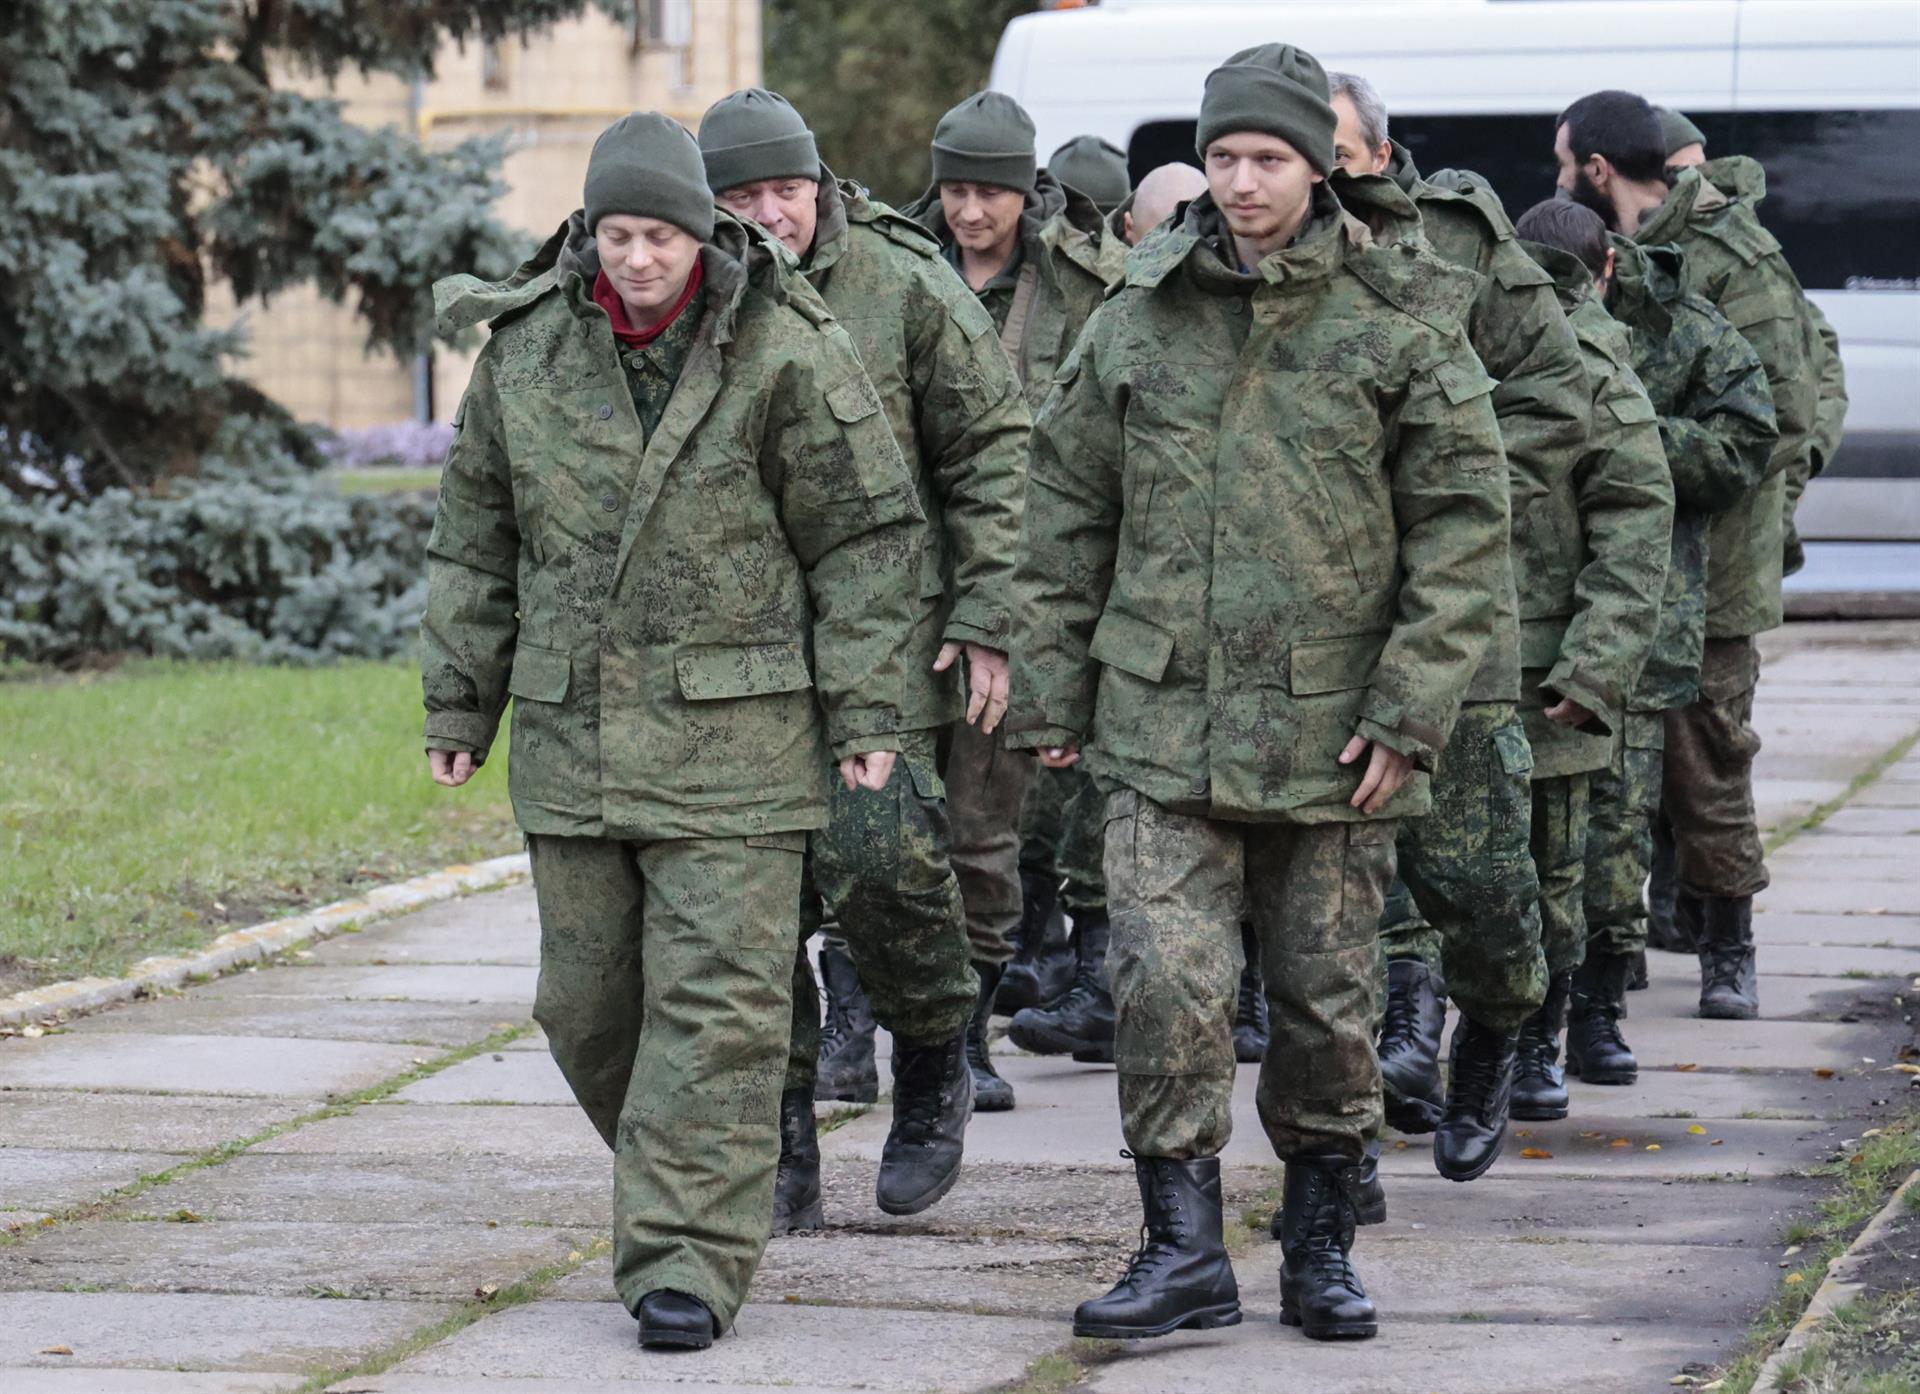 “Niños heridos con metralletas y soldados amputados” : Rusia y Ucrania anuncian intercambio de prisioneros